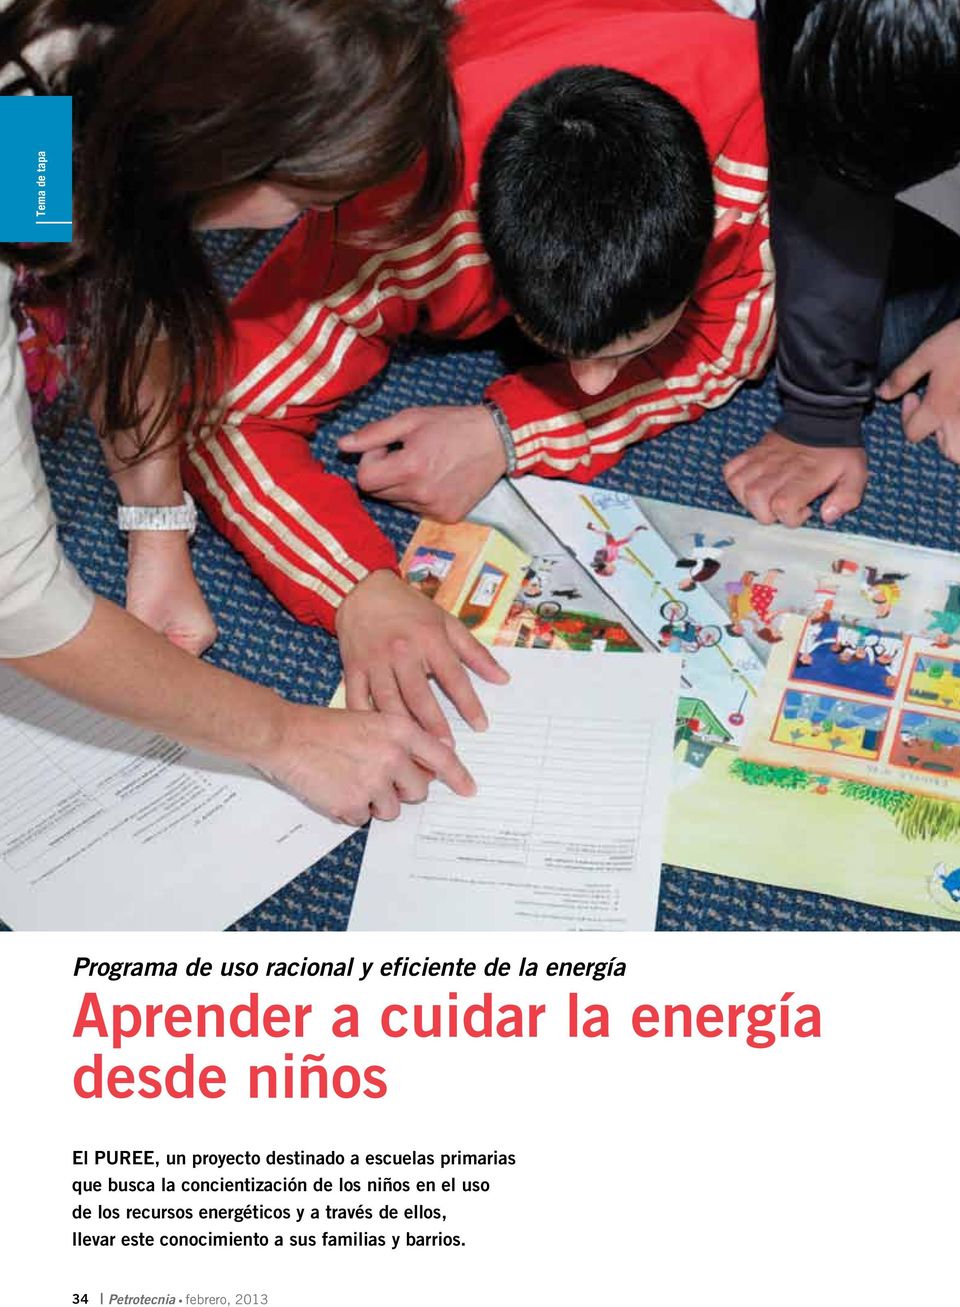 la concientización de los niños en el uso de los recursos energéticos y a través de